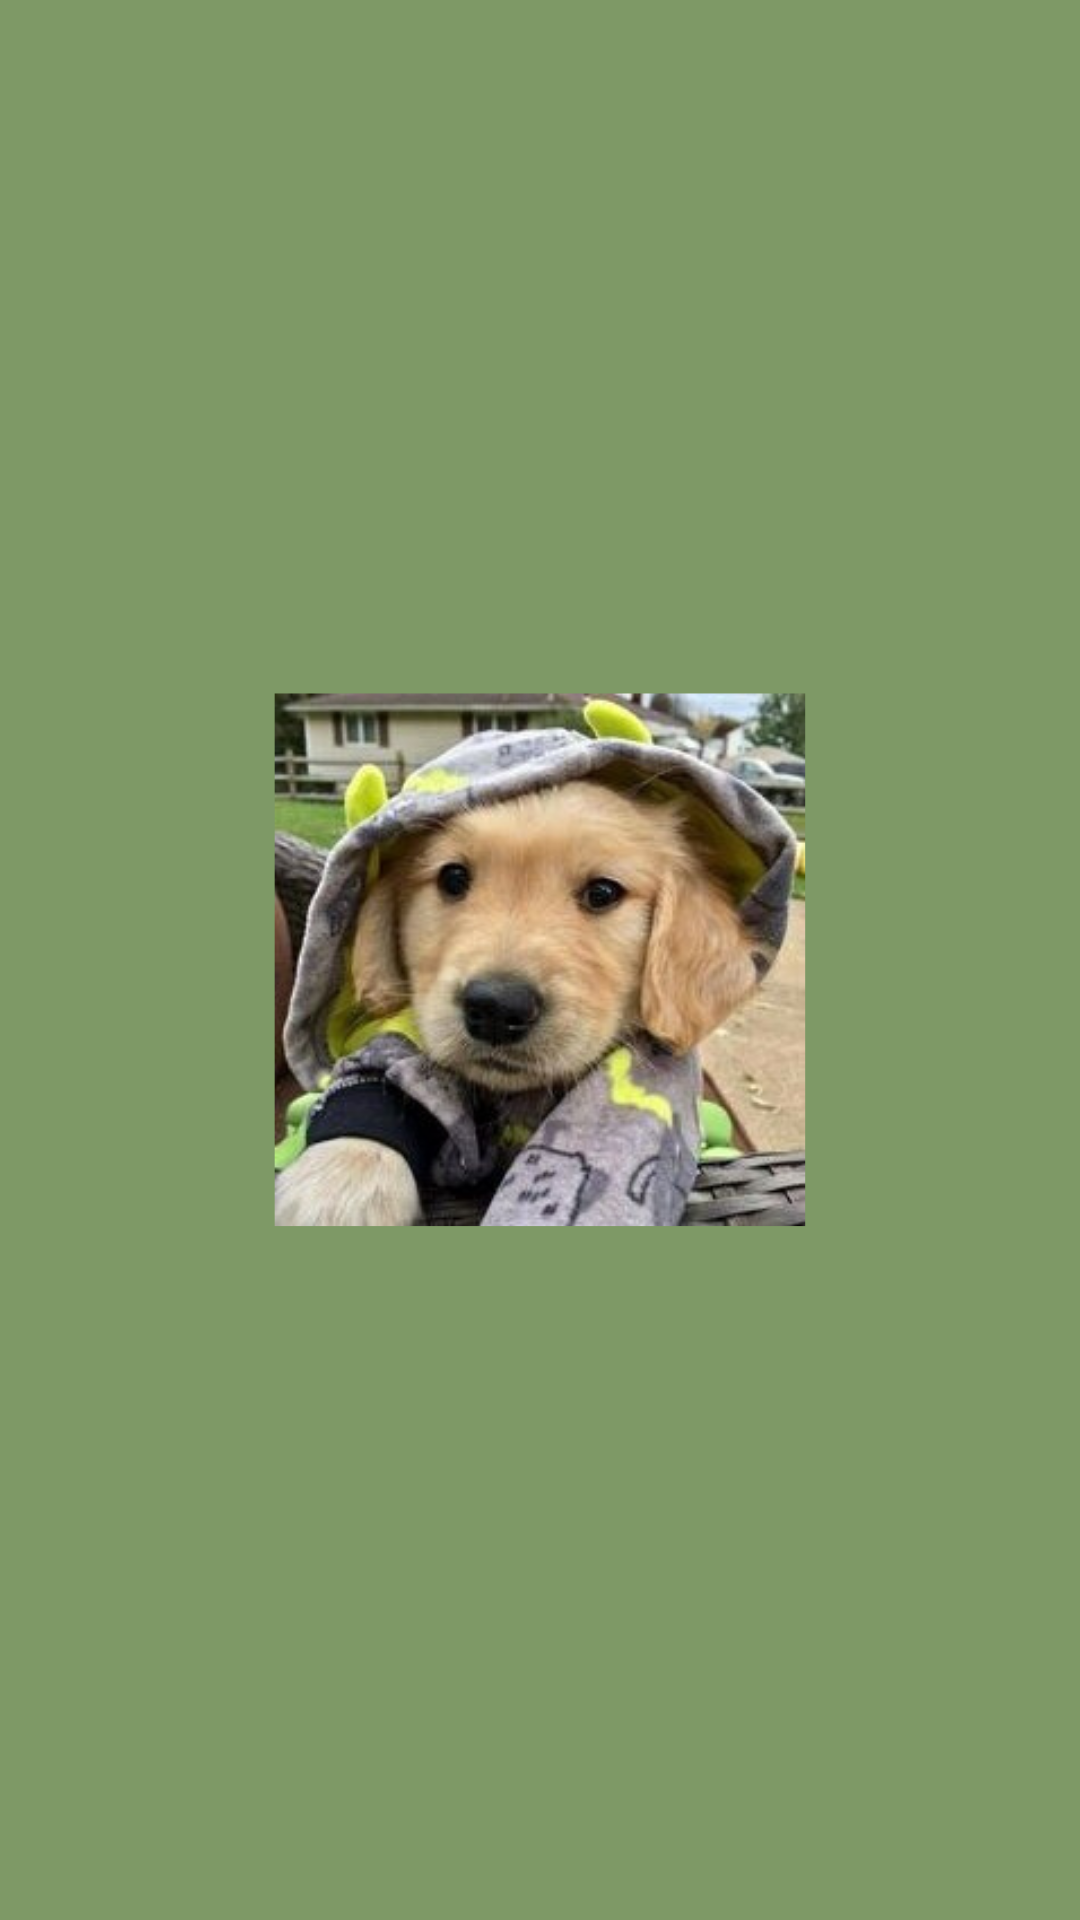  Süße Hunde Hintergrundbild 1080x1920. ig roselett